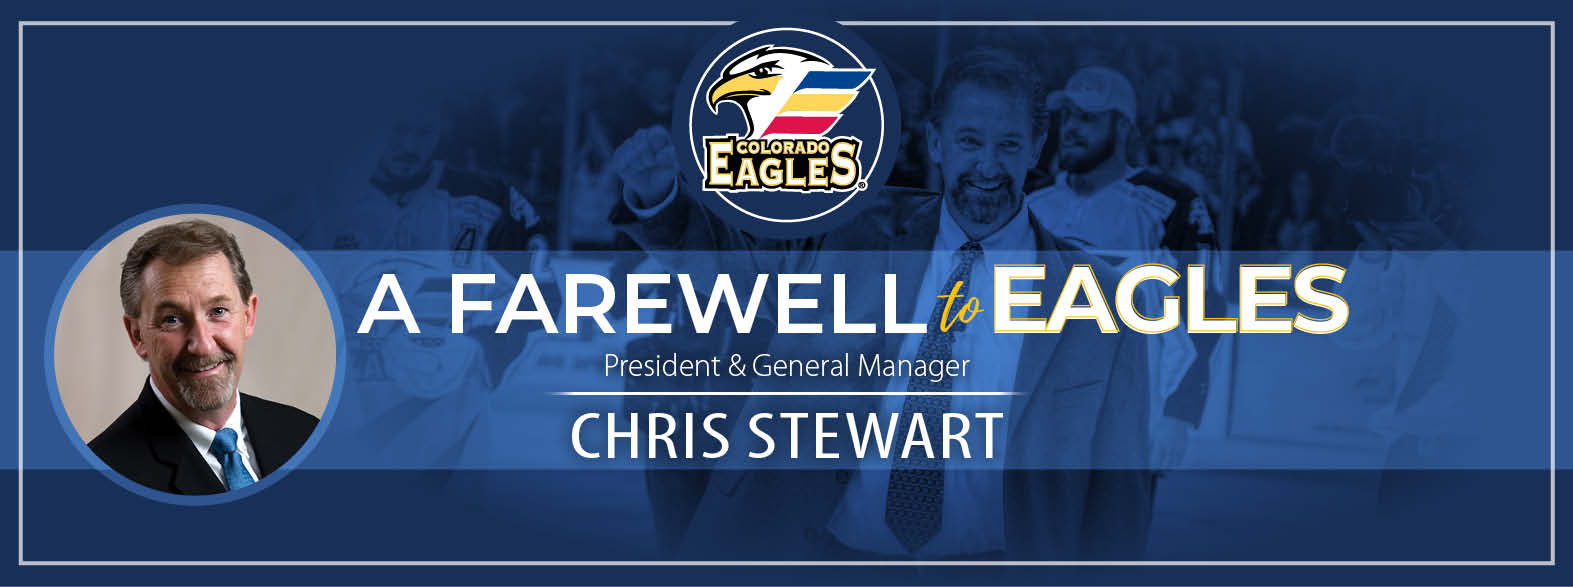 Chris Stewart Announces His Retirement